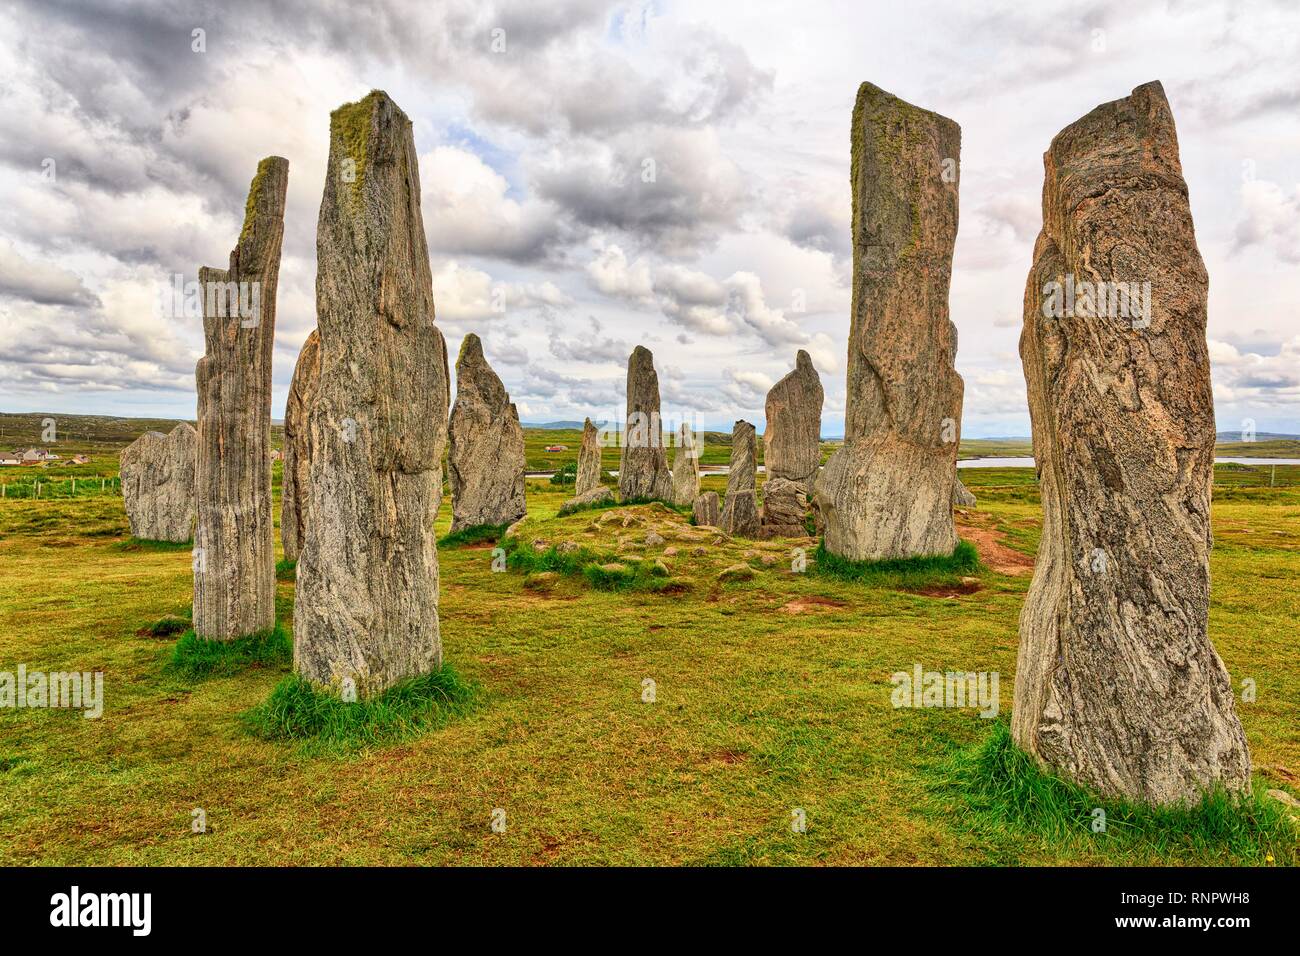 La Formation de Pierre mégalithe Callanish Standing Stones, Stone Circle sous un ciel nuageux, l'île de Lewis et Harris, Outer Hebrides Banque D'Images